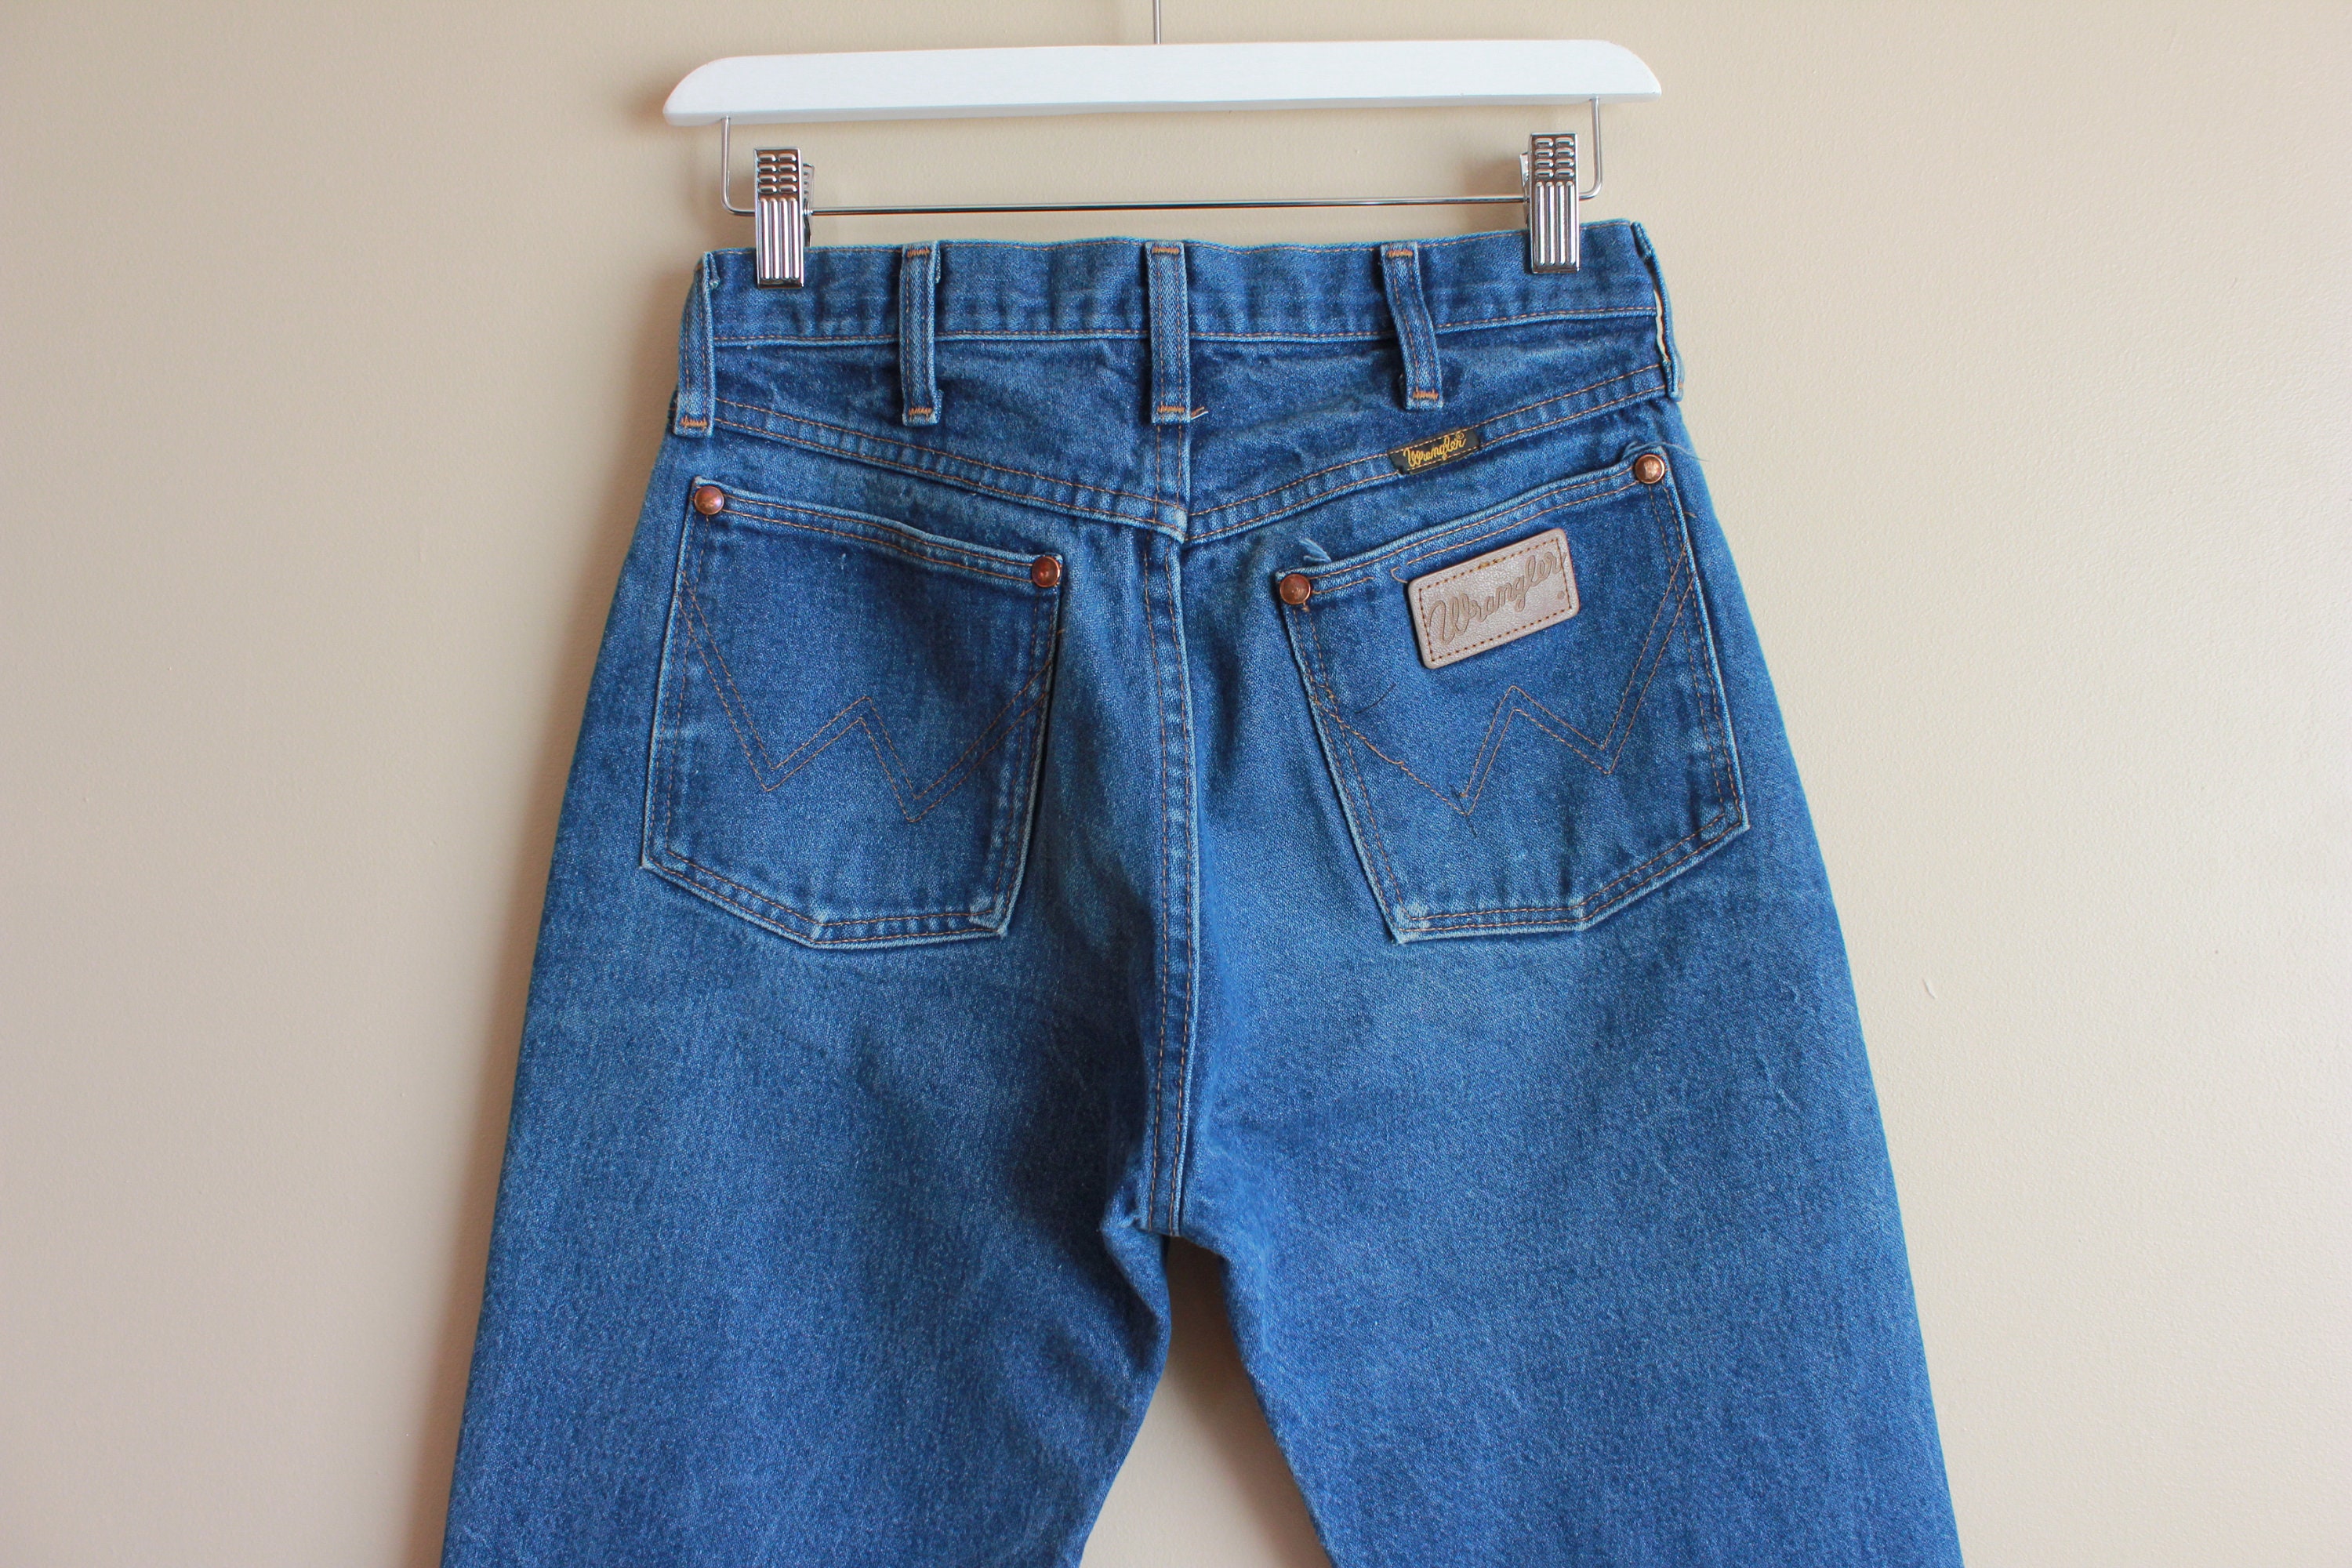 Vintage 80s/ 90s Wrangler Jeans. Unisex / Women's Fits | Etsy